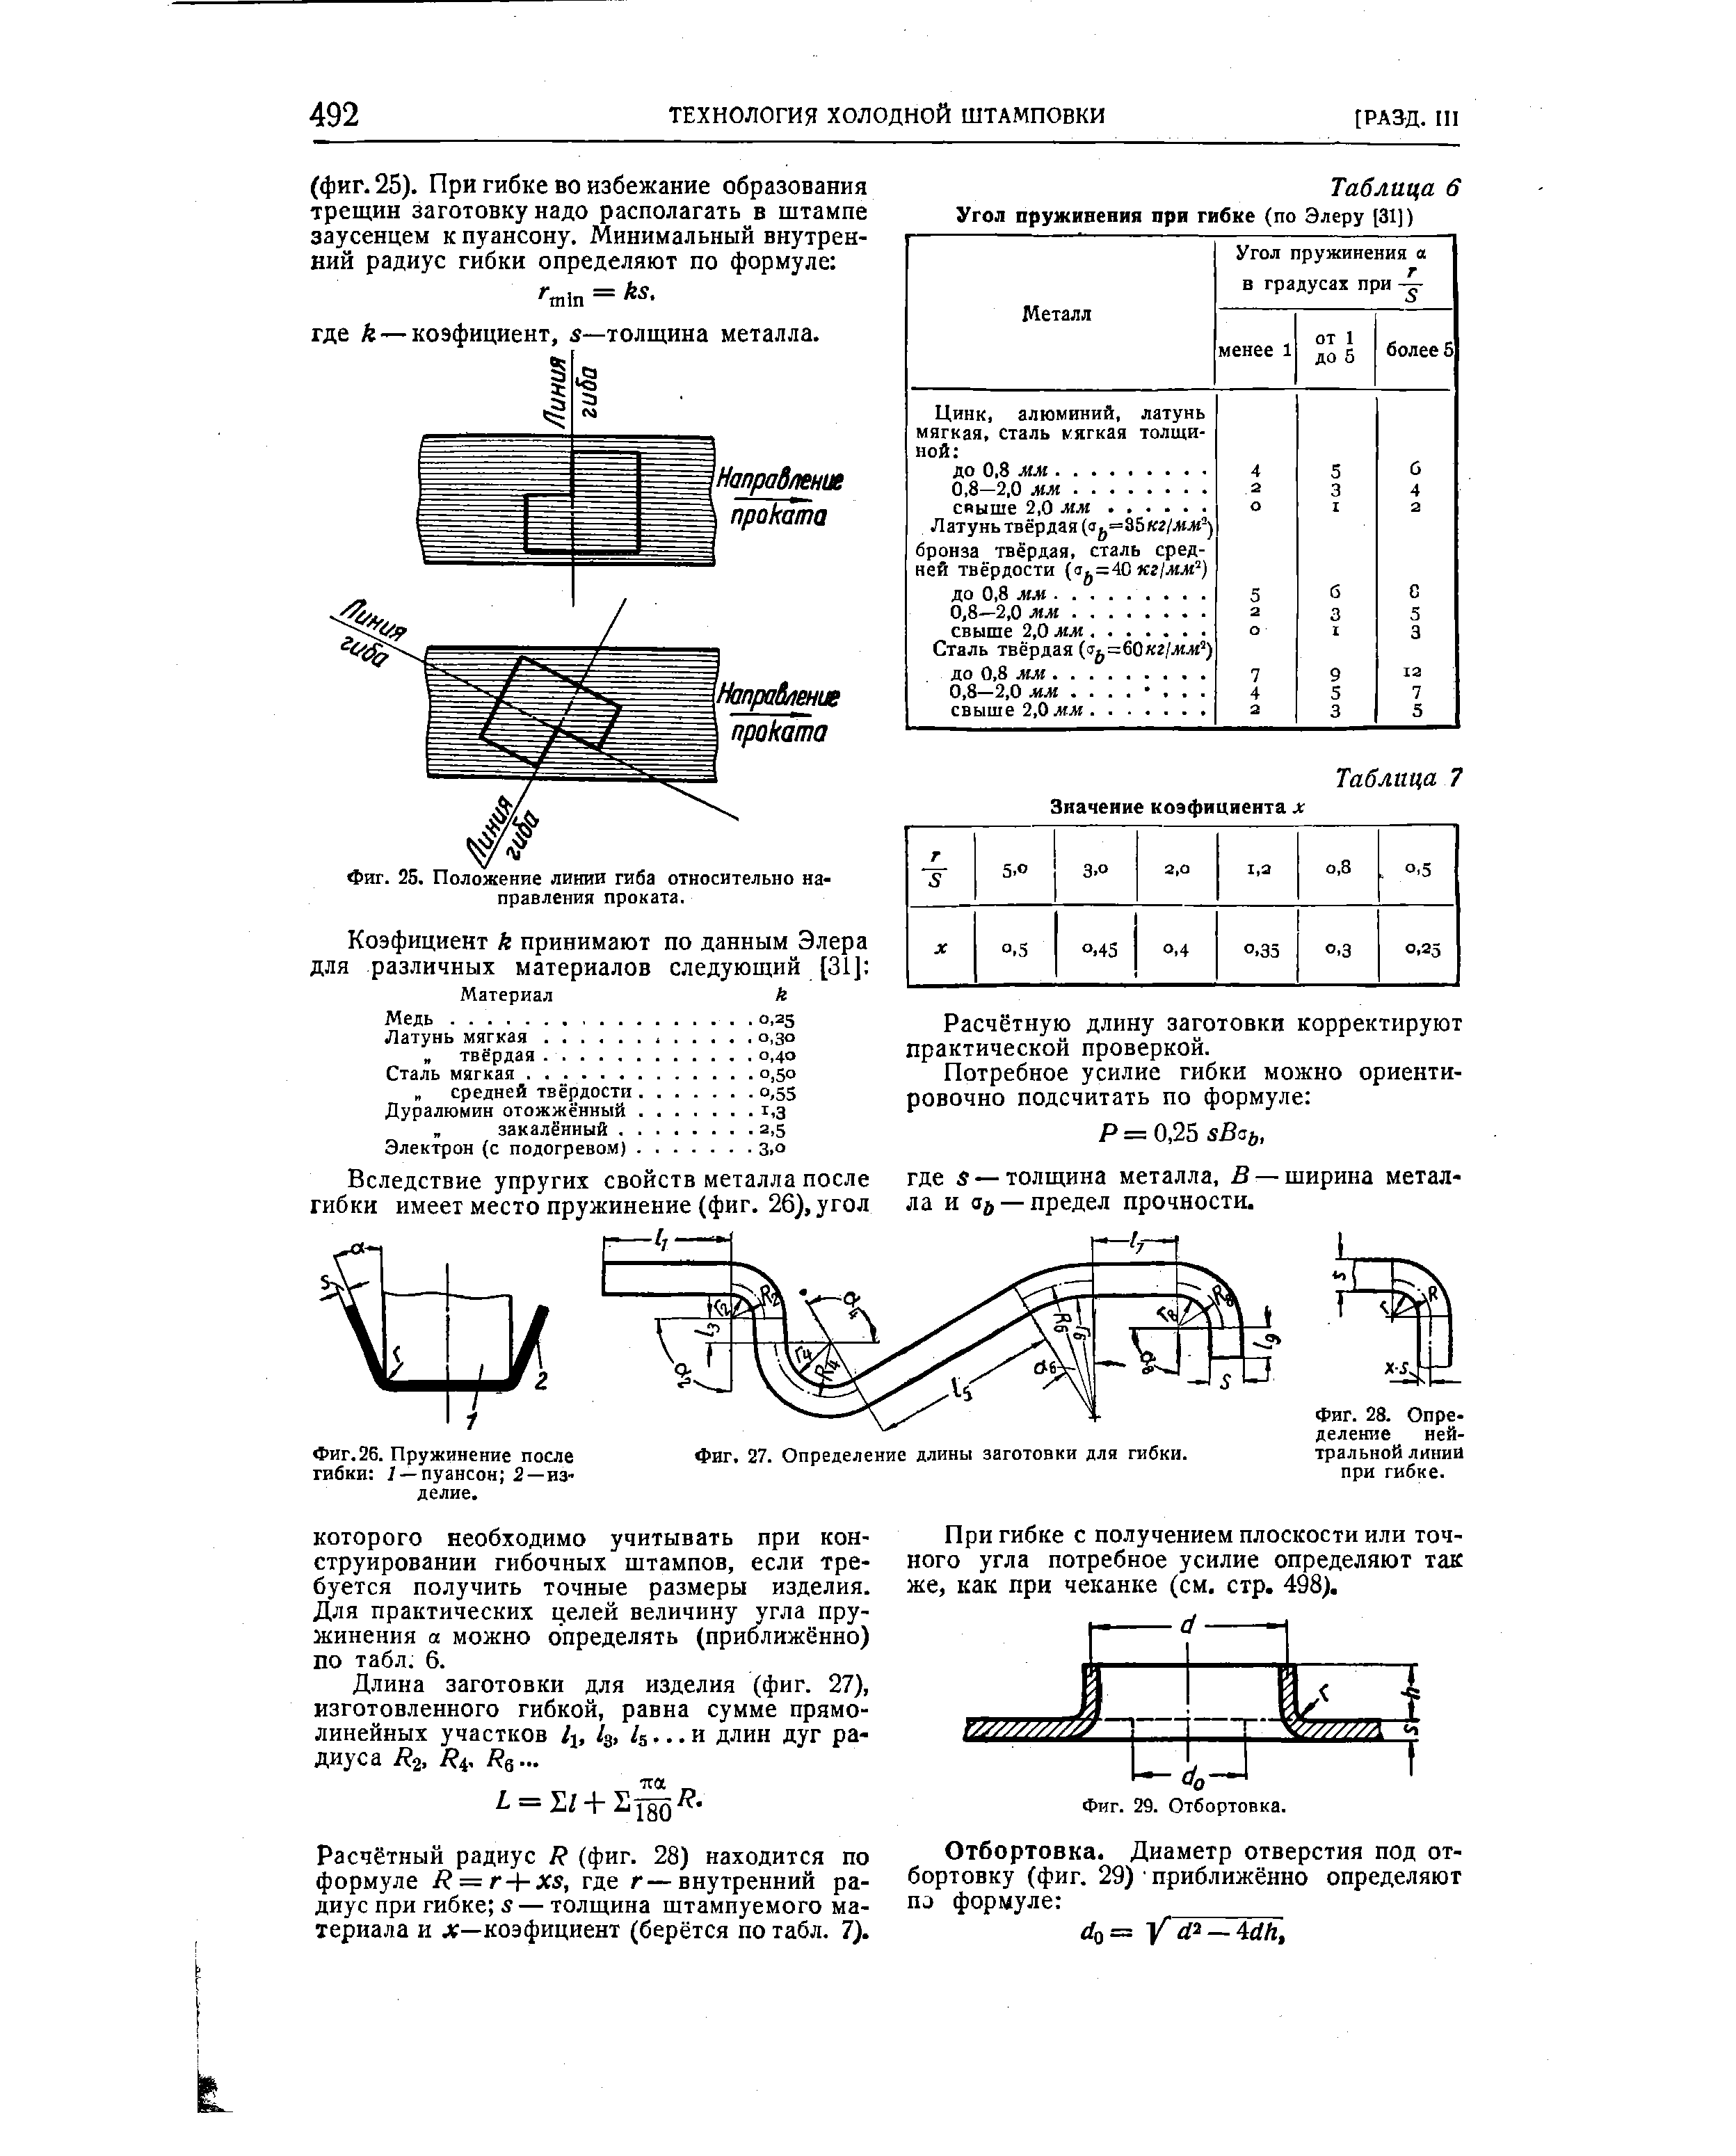 Таблица 6 Угол пружинения при гибке (по Элеру [31])
